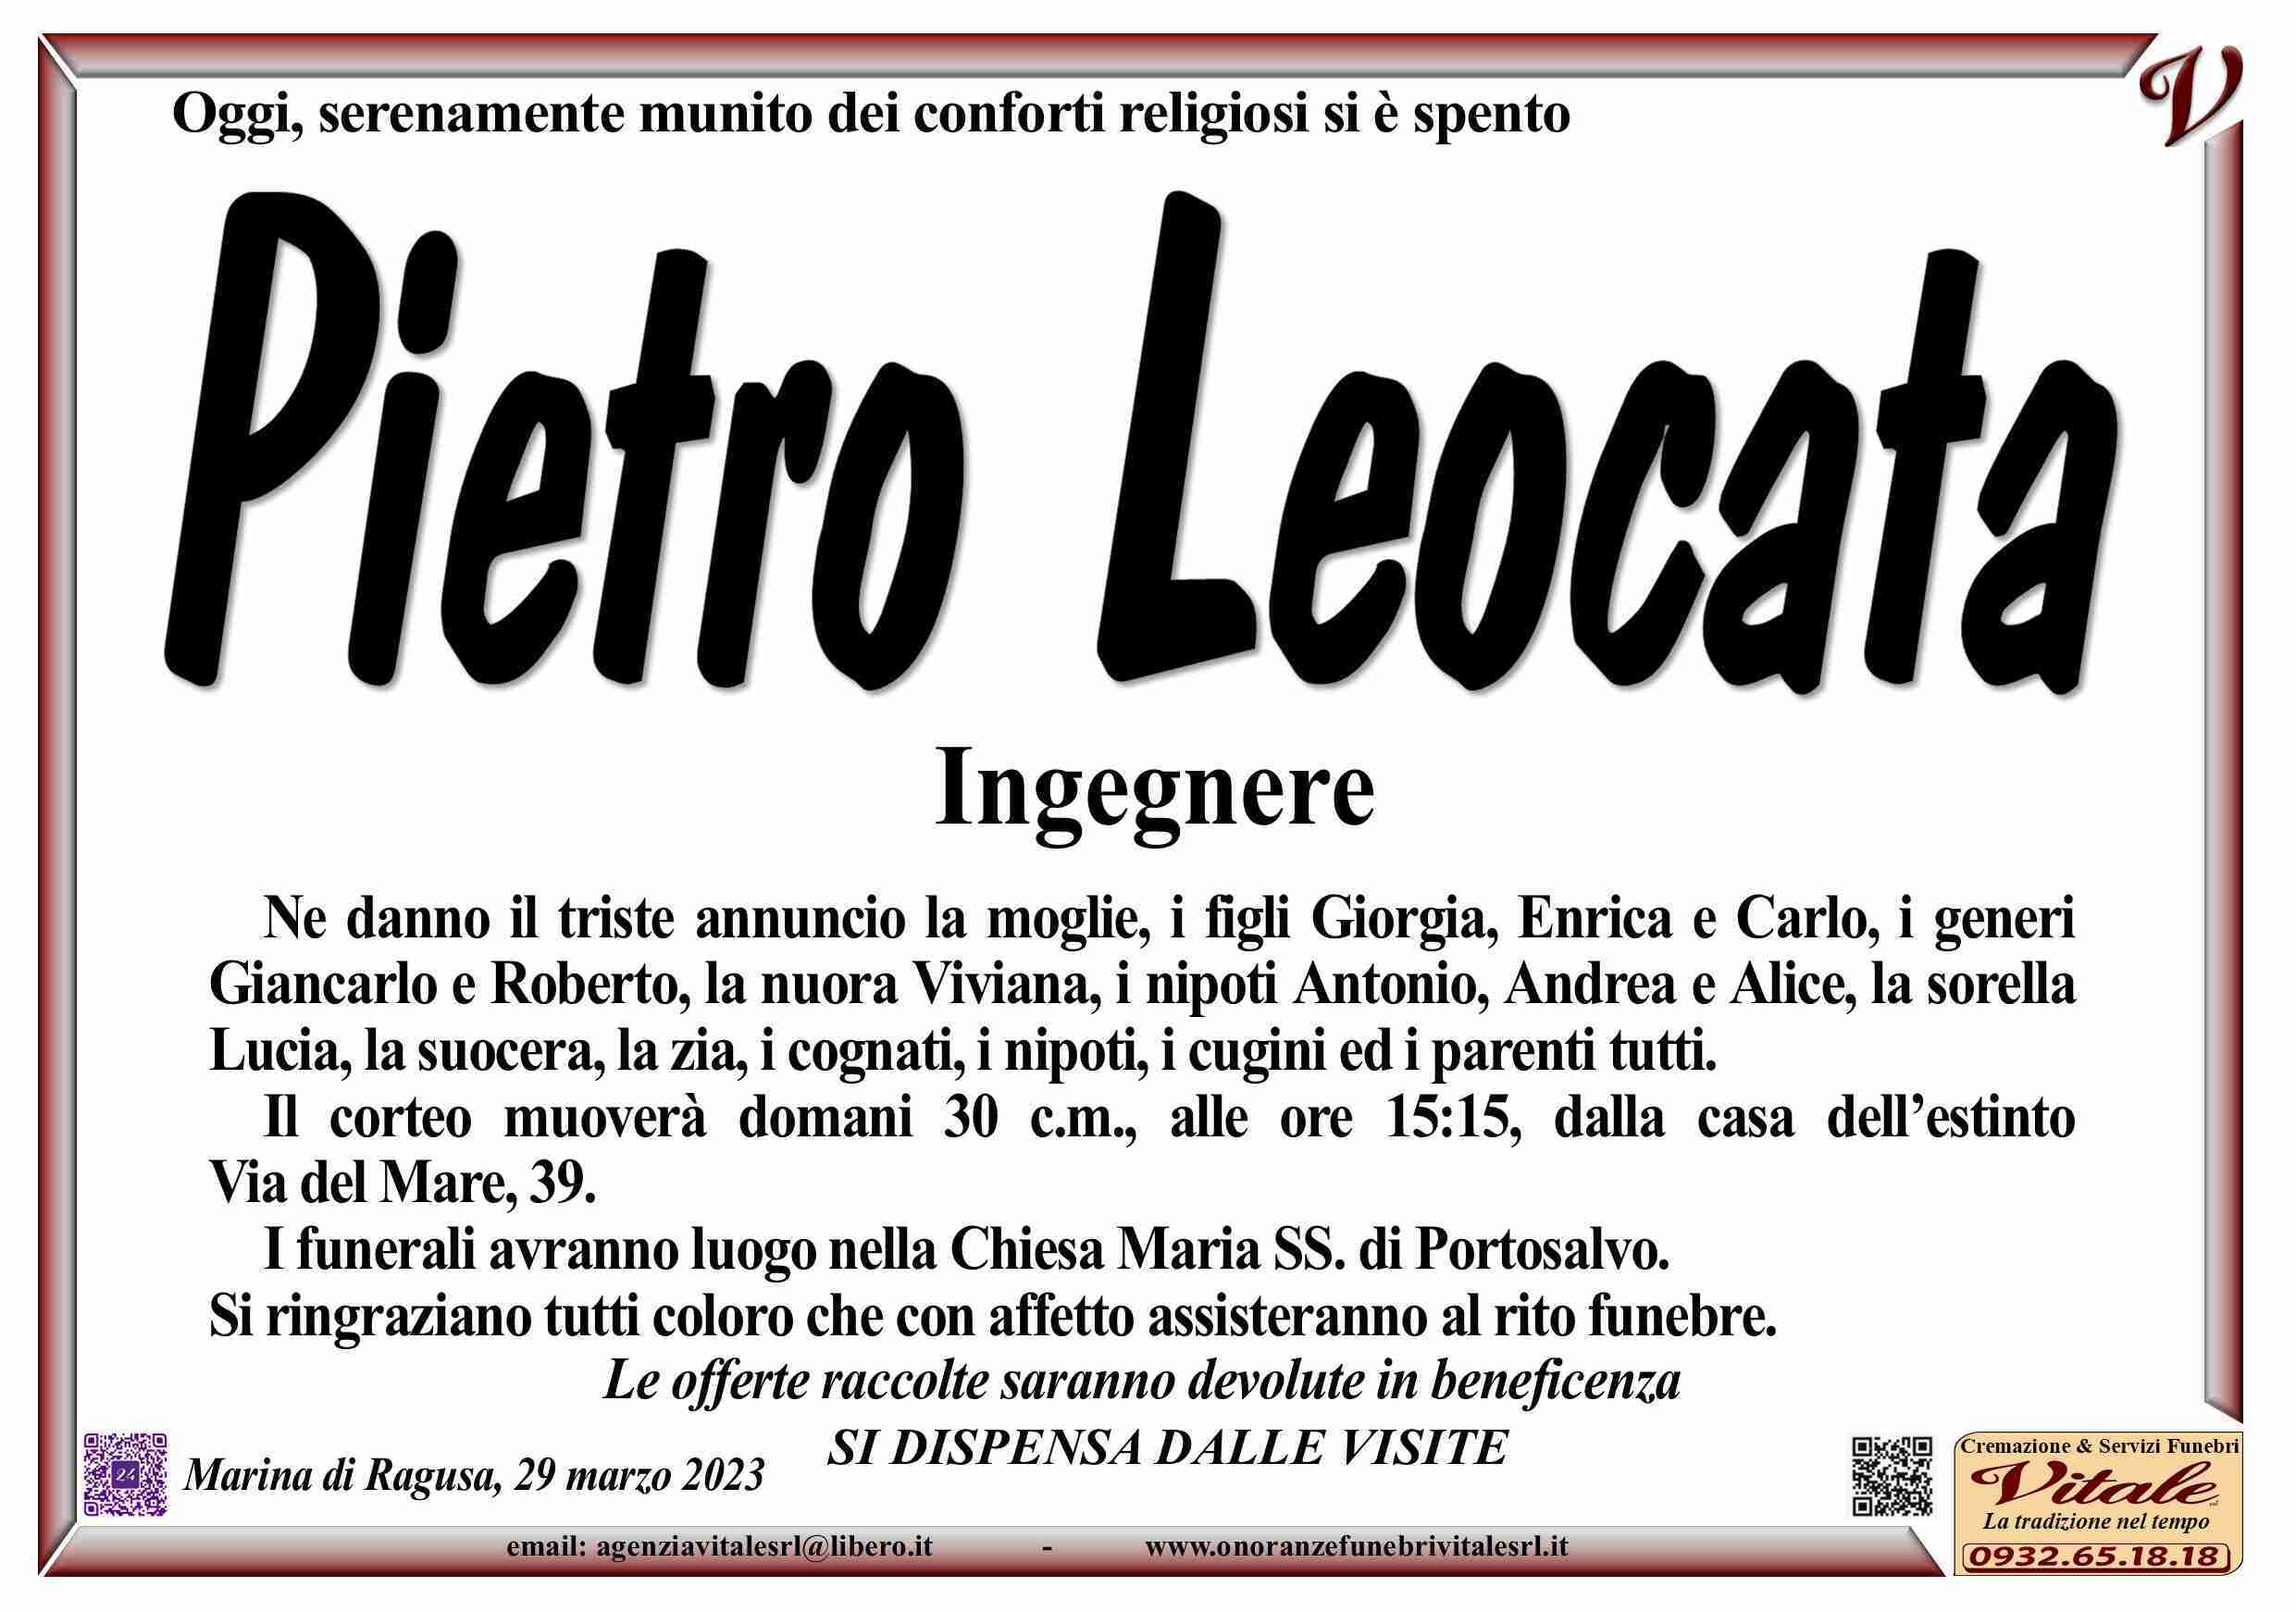 Pietro Leocata